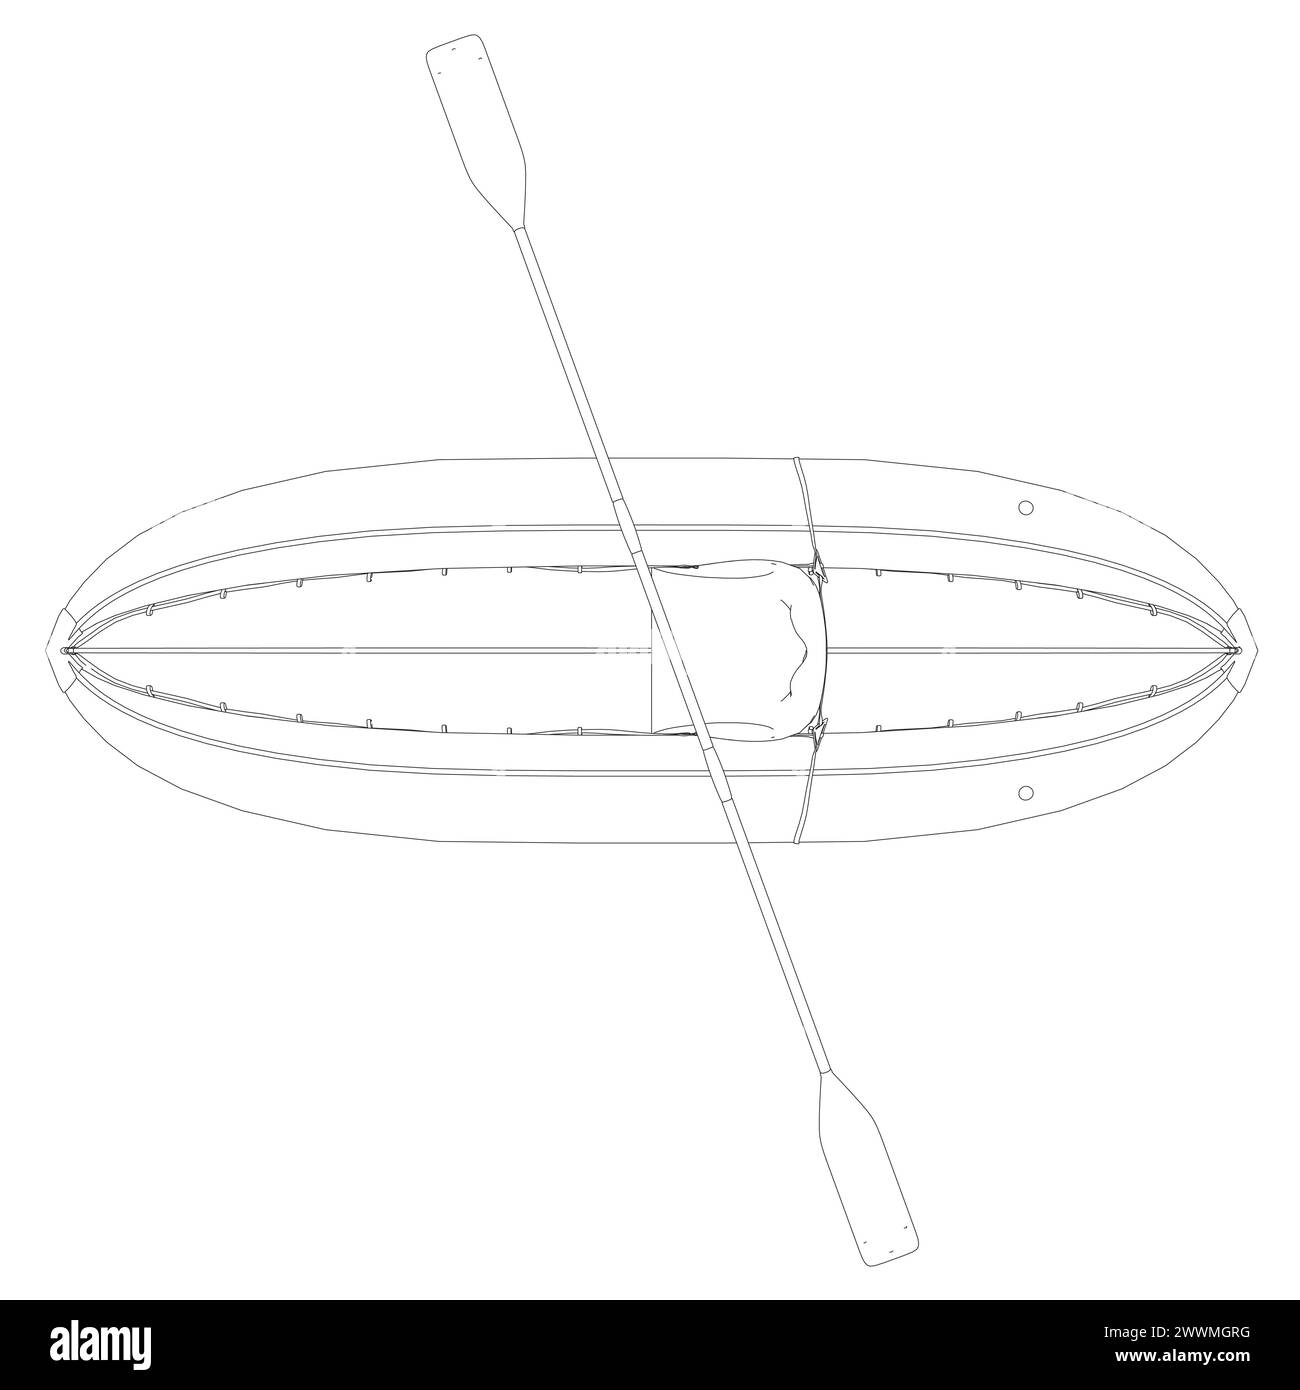 Contour du bateau gonflable avec pédalier. Illustration vectorielle plate isolée de style simple de dessin animé sur fond blanc. Dispositif de transport gonflable en caoutchouc pour bateaux Illustration de Vecteur